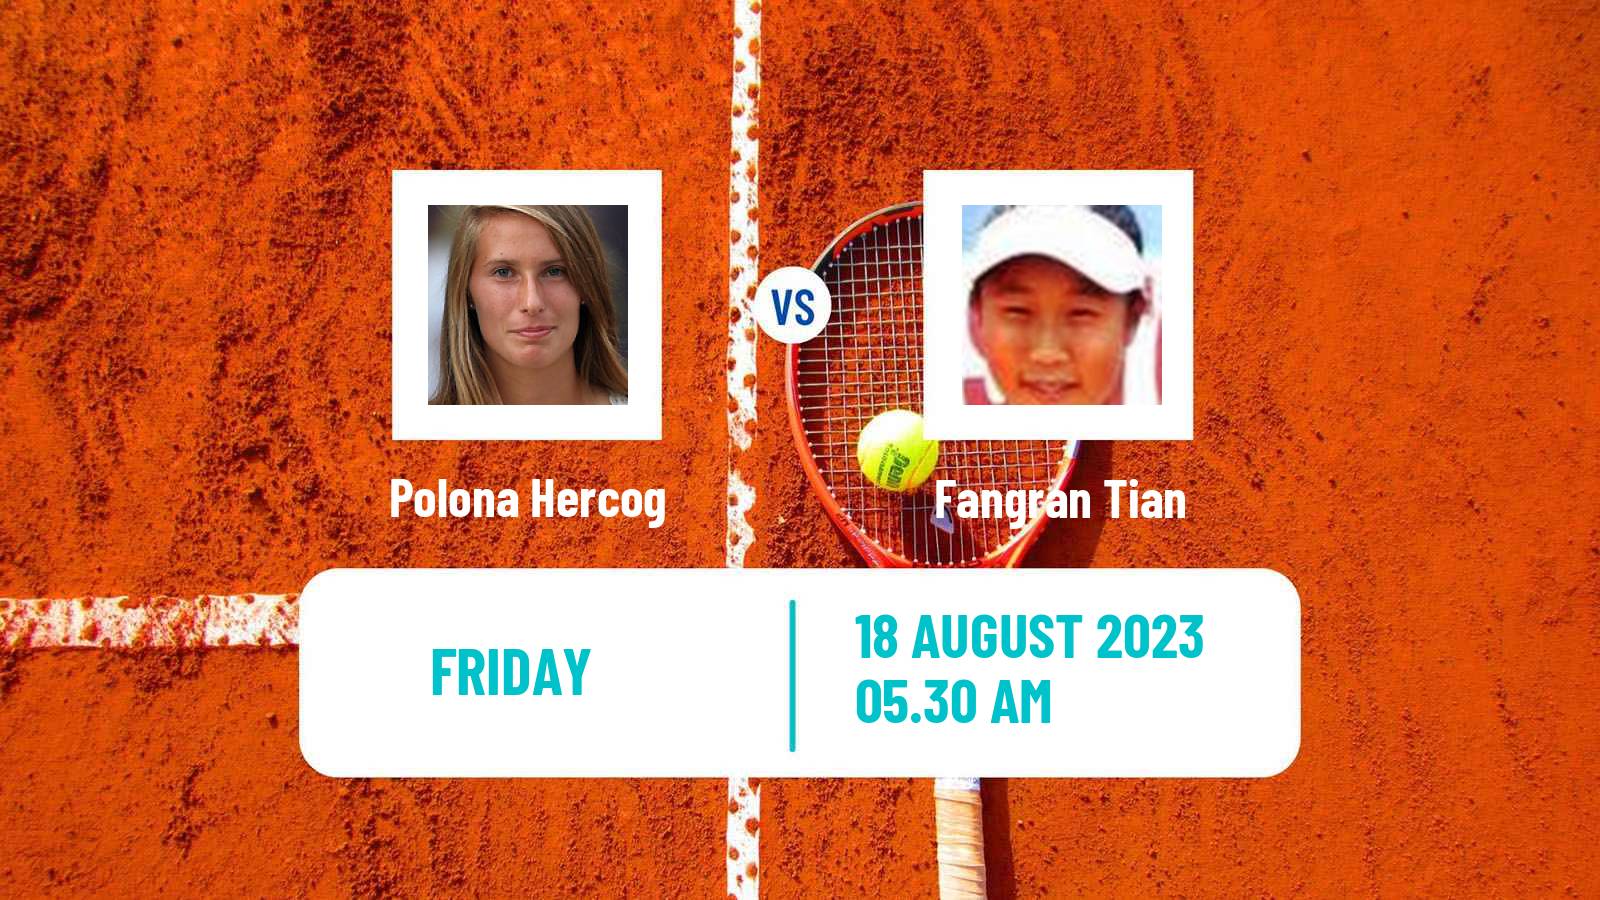 Tennis ITF W25 Vrnjacka Banja Women Polona Hercog - Fangran Tian